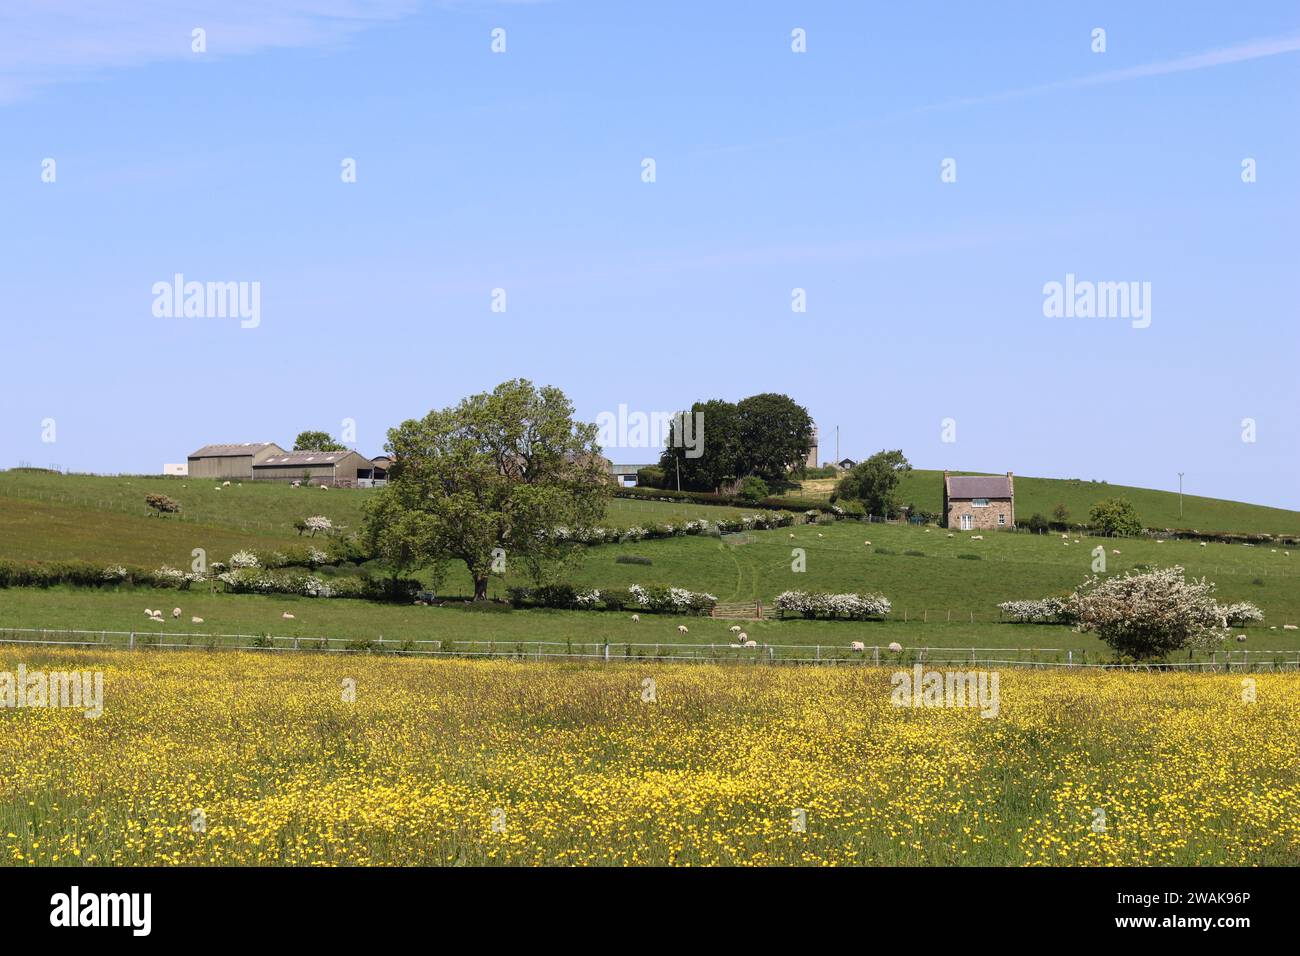 Vue sur un champ rural couvert de buttercups jaune vif, à une ferme au sommet d'une colline Banque D'Images